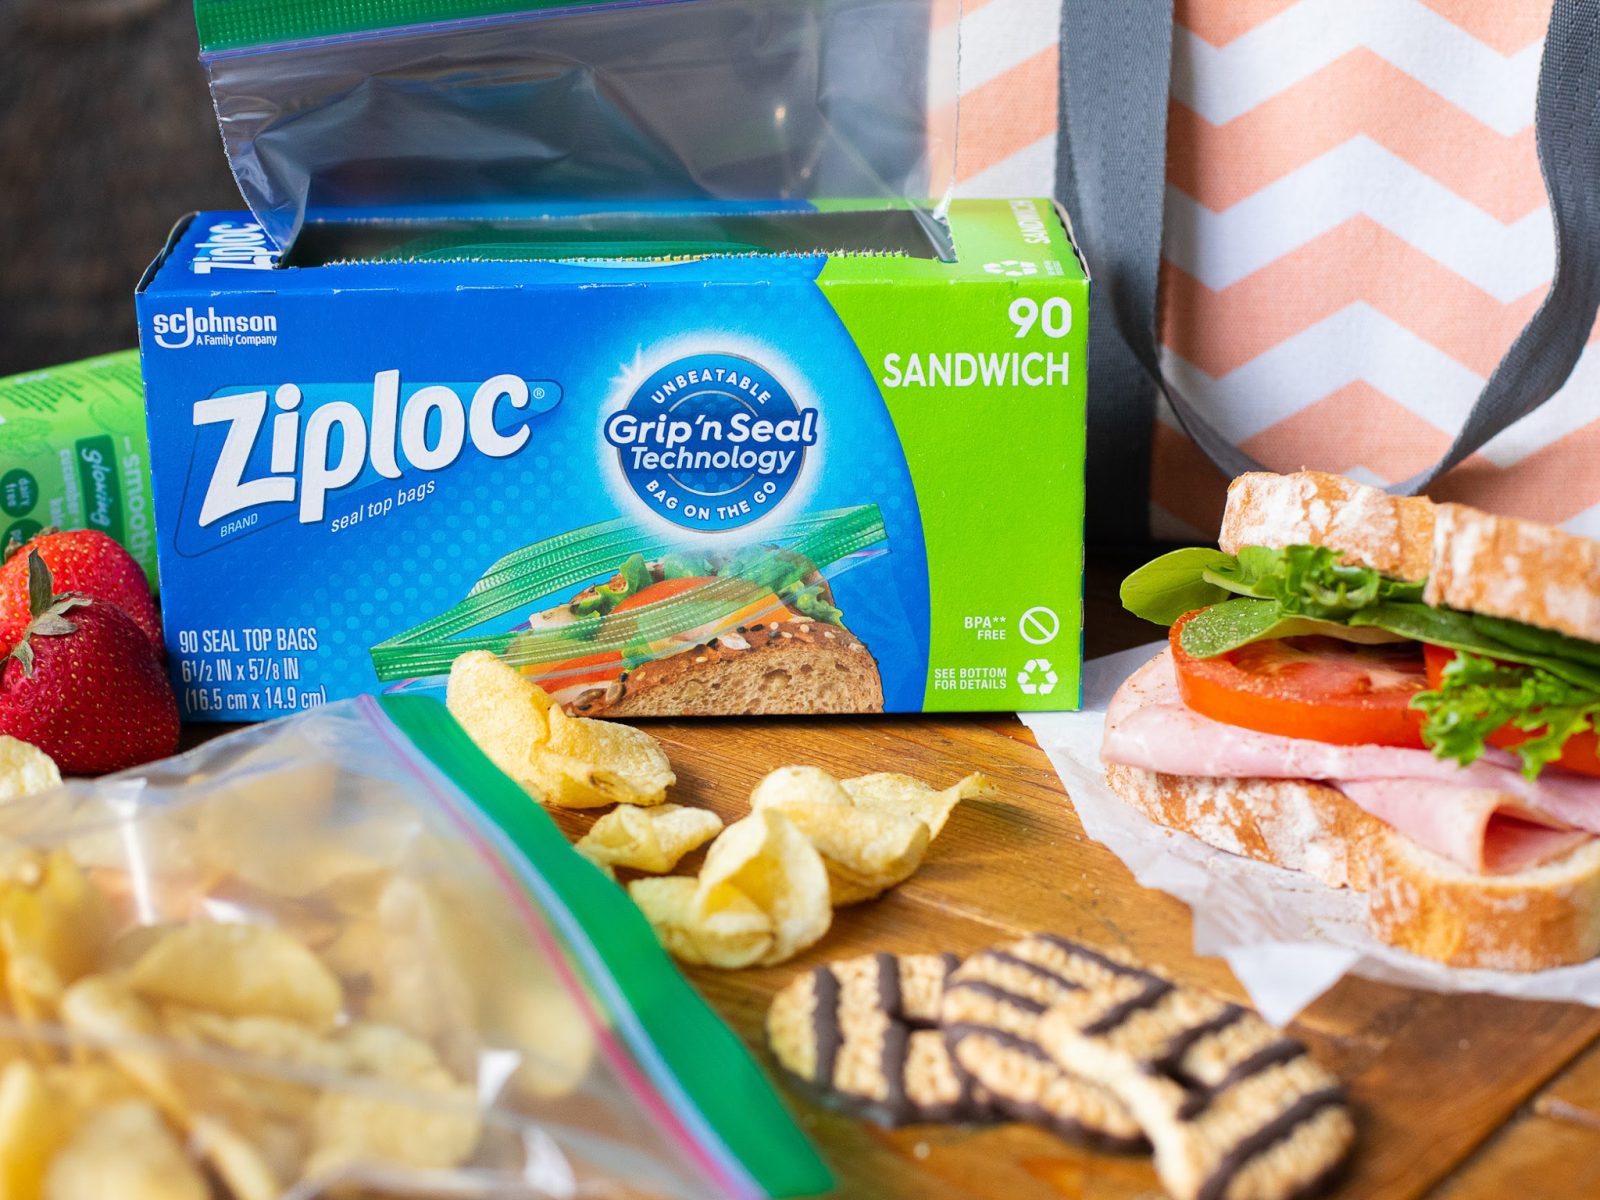 Ziploc Ziploc Sandwich Bags, 90 Count